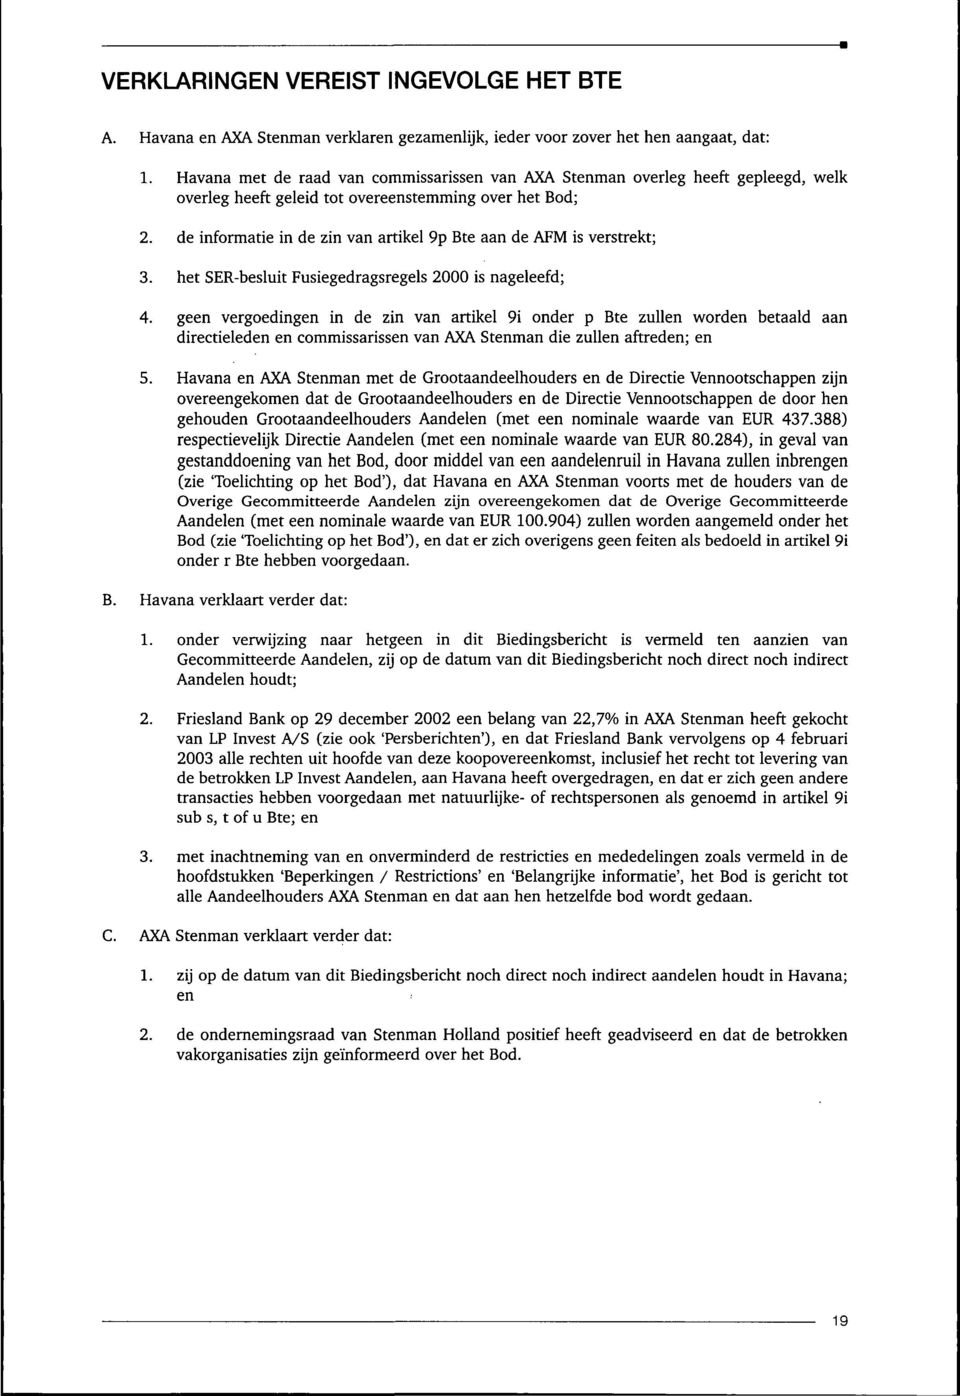 de informatie in de zin van artikel 9p Bte aan deafmis verstrekt; 3. het SER-besluit Fusiegedragsregels 2000 is nageleefd; 4.